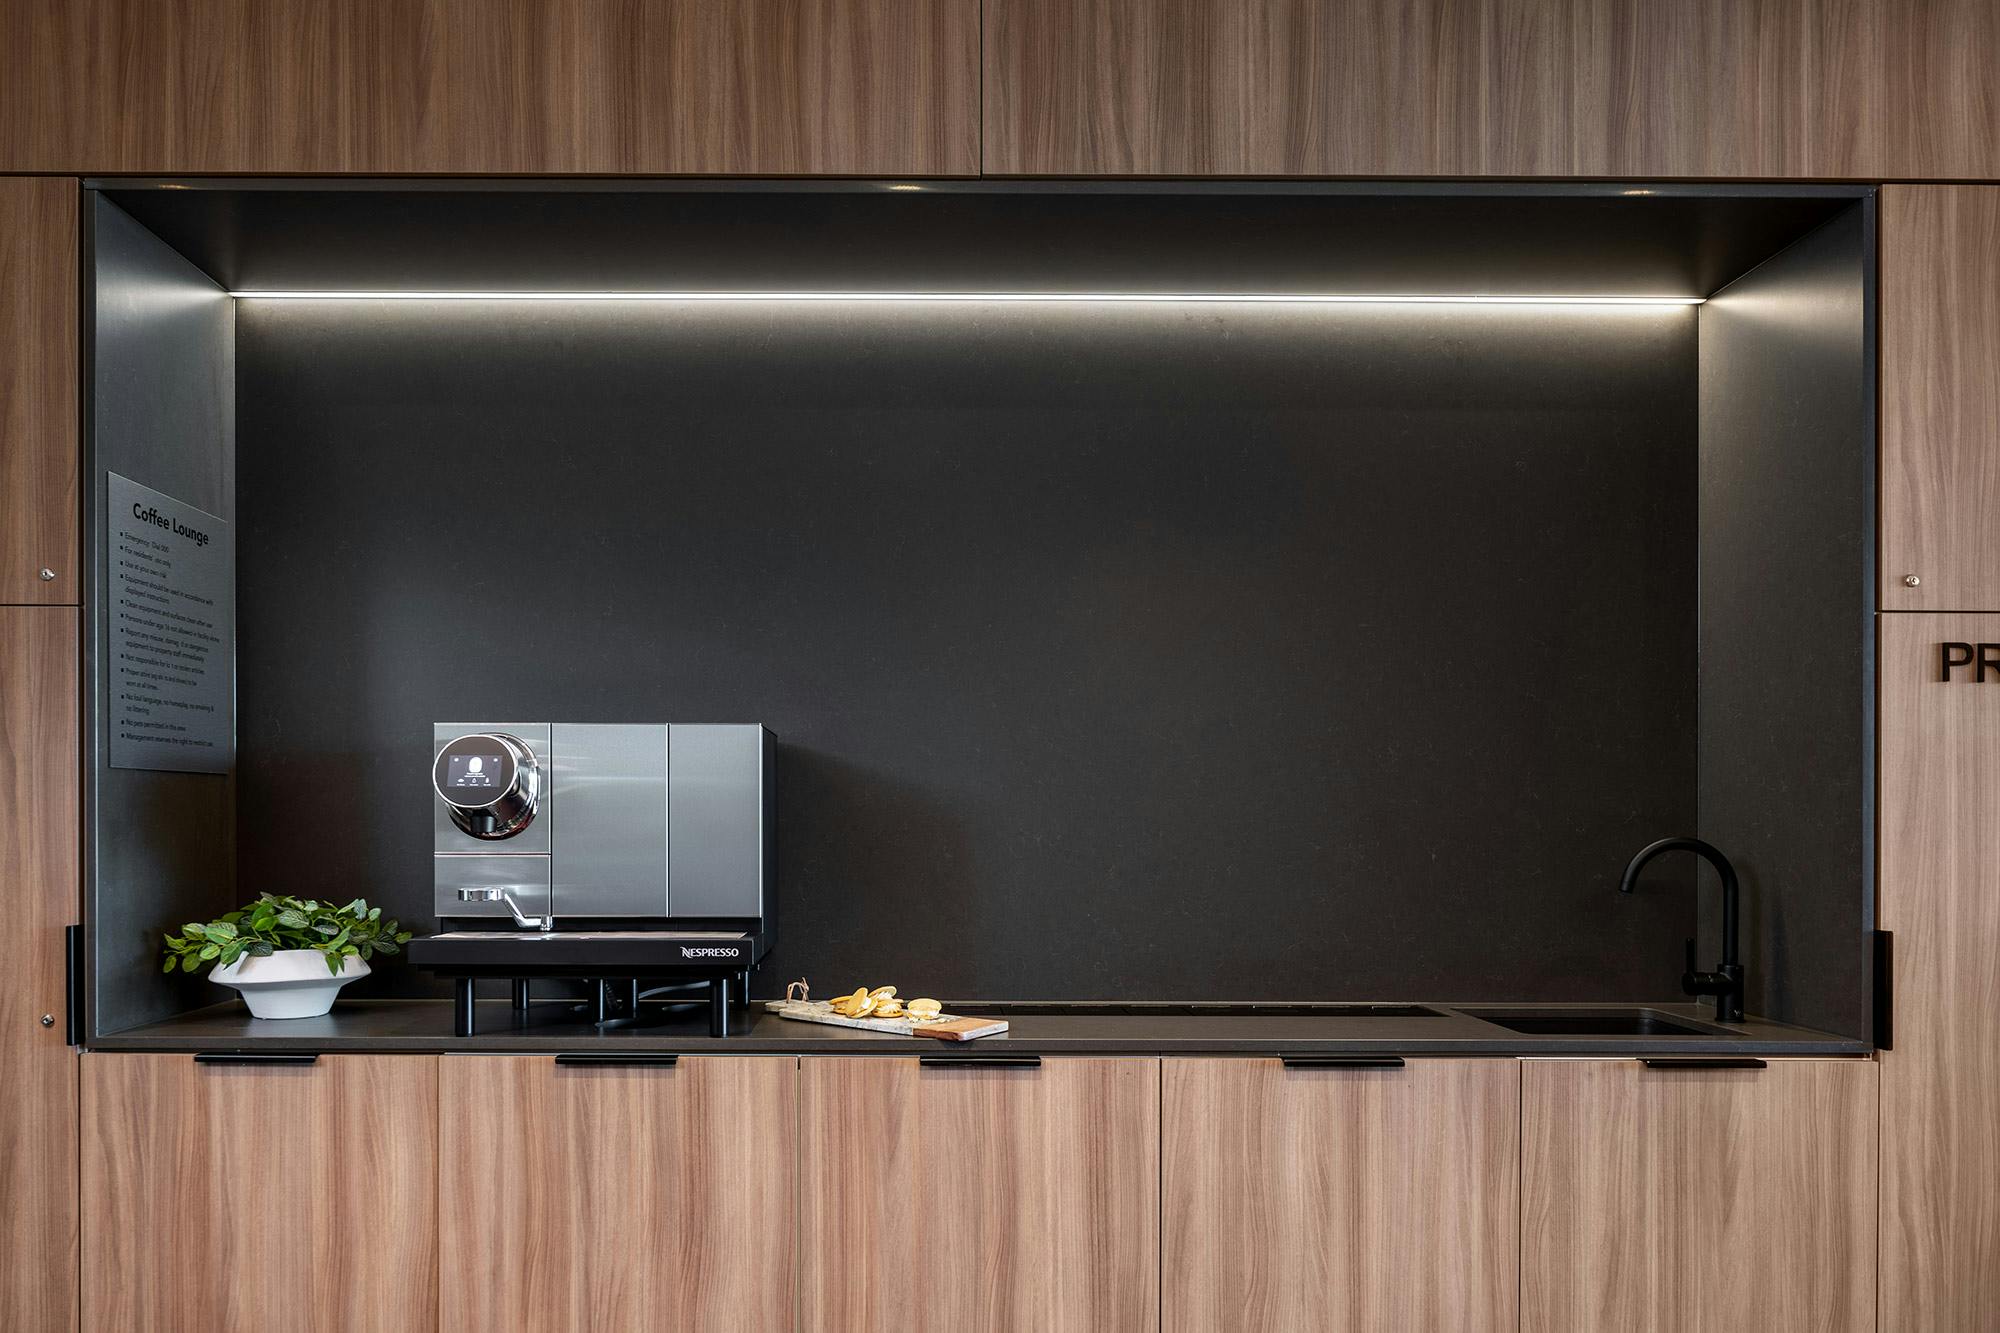 Bildnummer 77 des aktuellen Abschnitts von A luxurious rental building chooses Cosentino for its durability, elegance and sustainability von Cosentino Deutschland